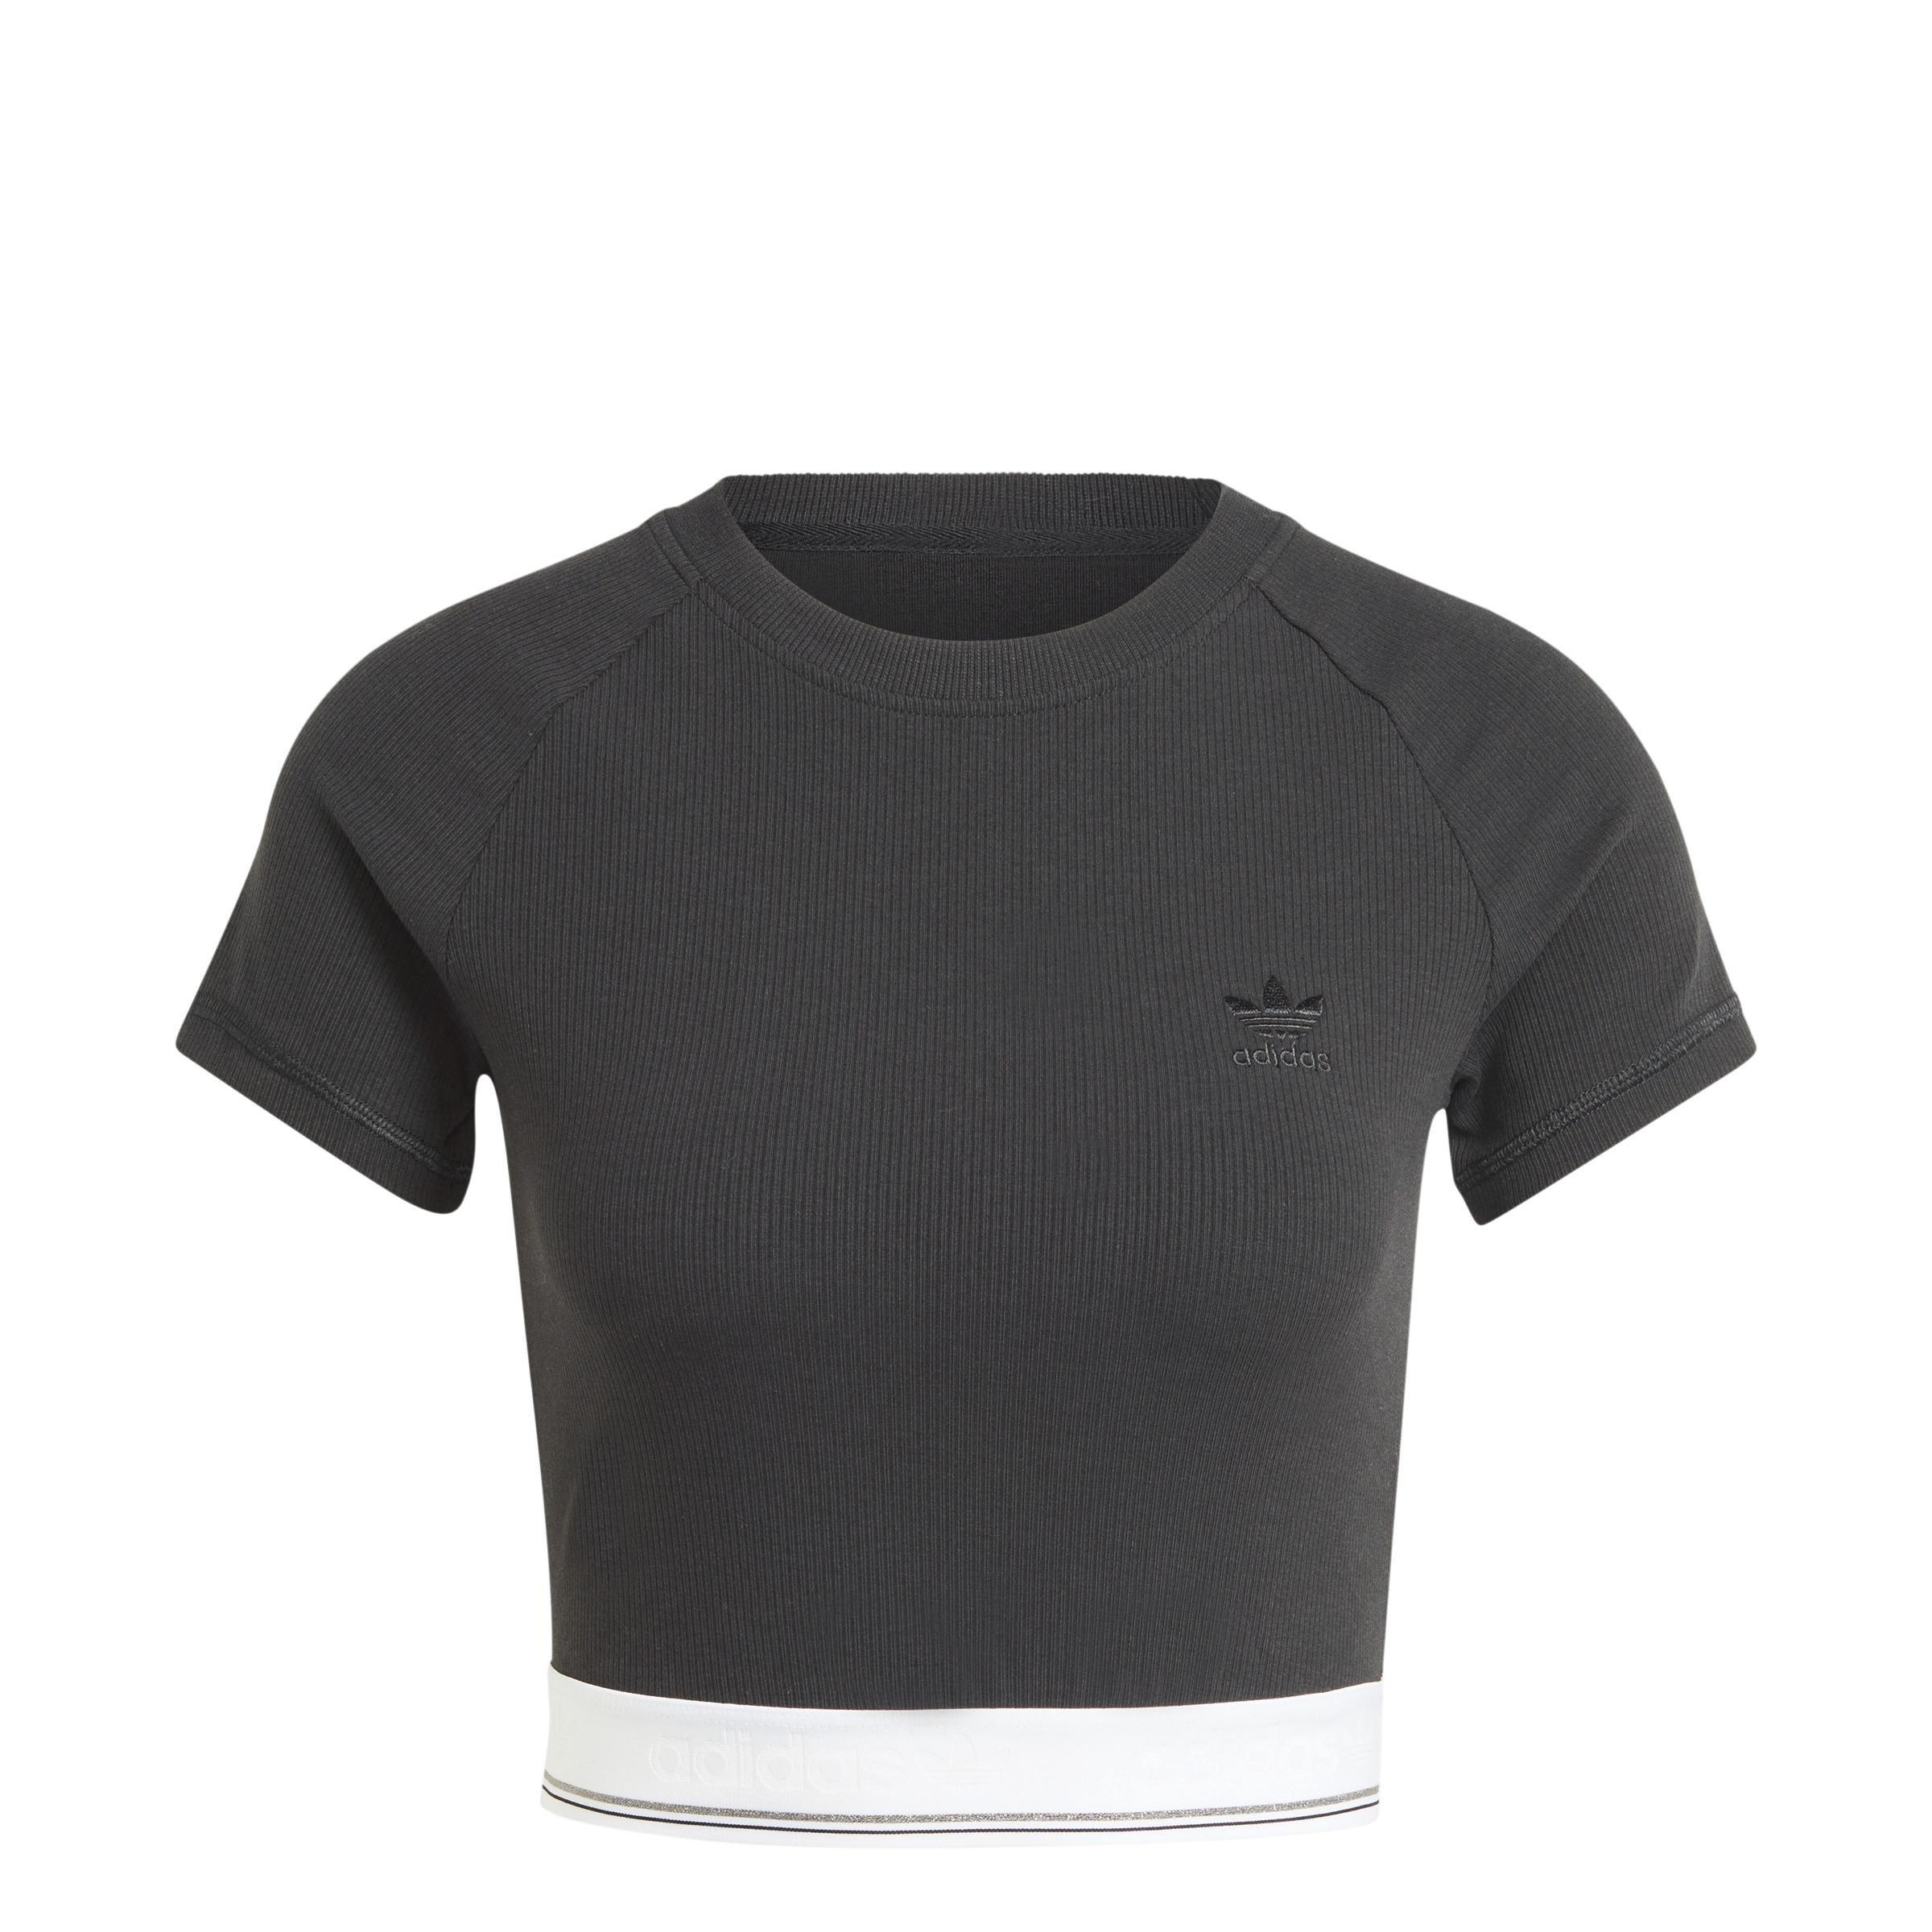 adidas - Women Tape Waistband T-Shirt, Black